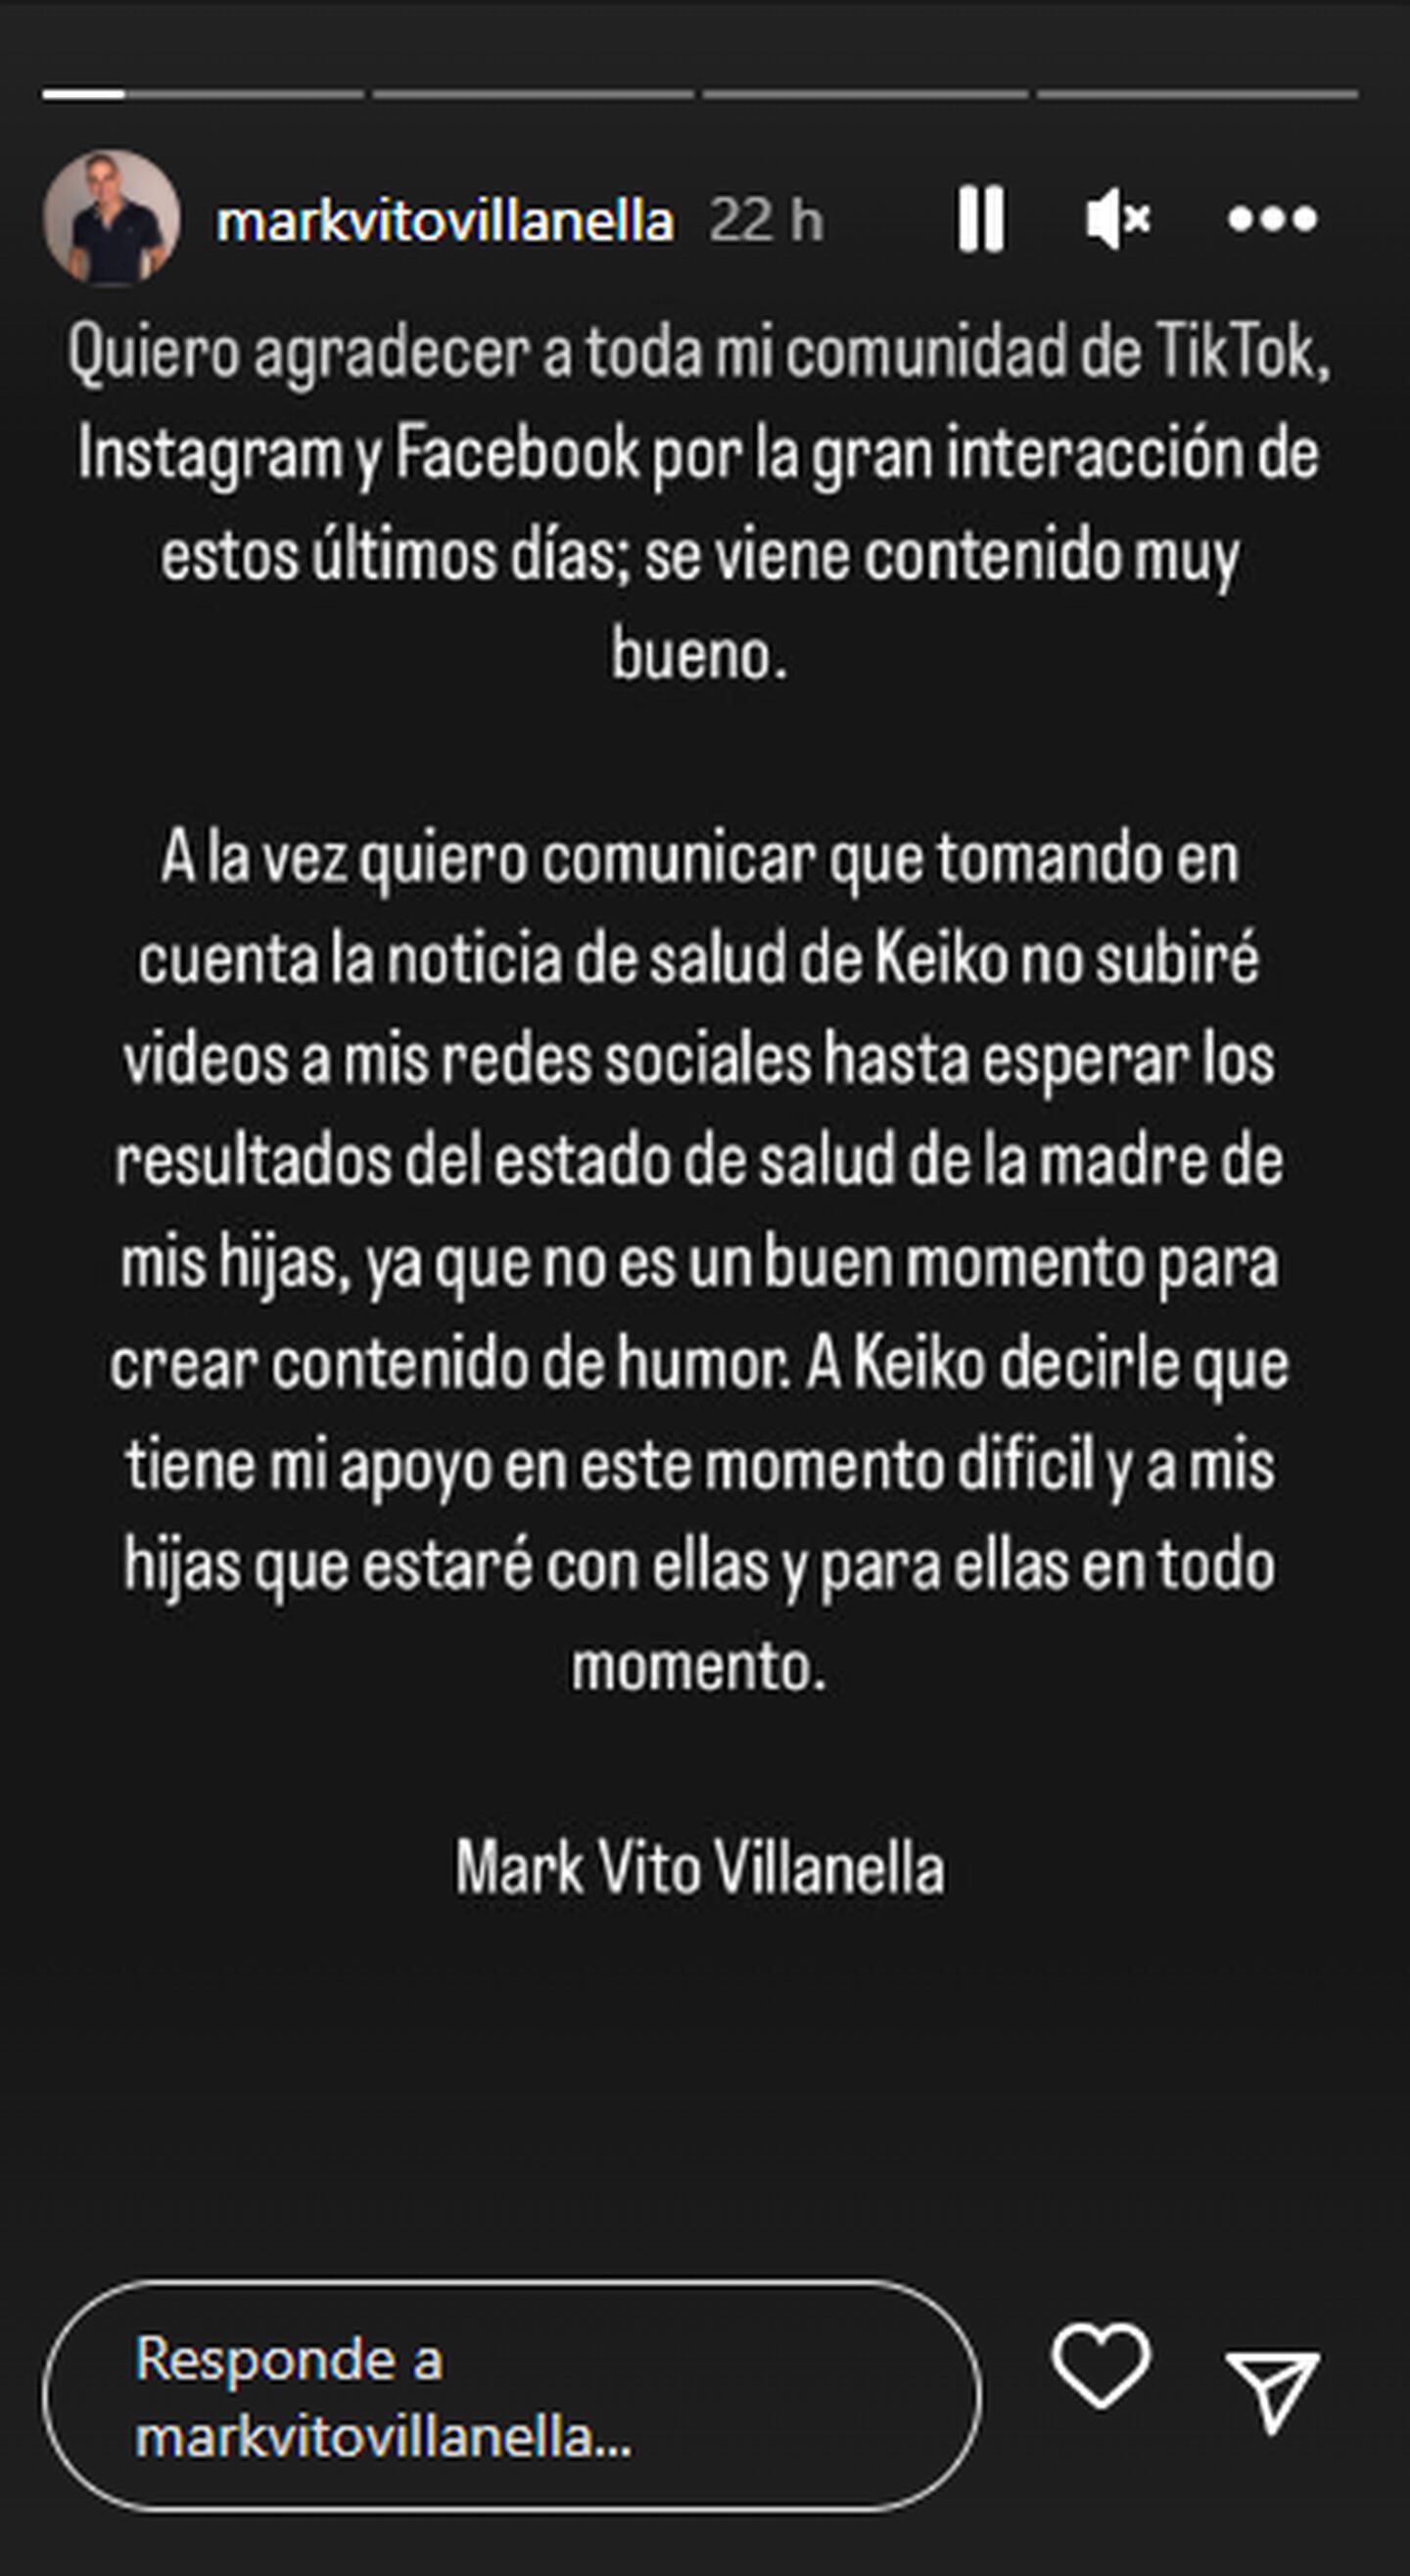 Mark Vito